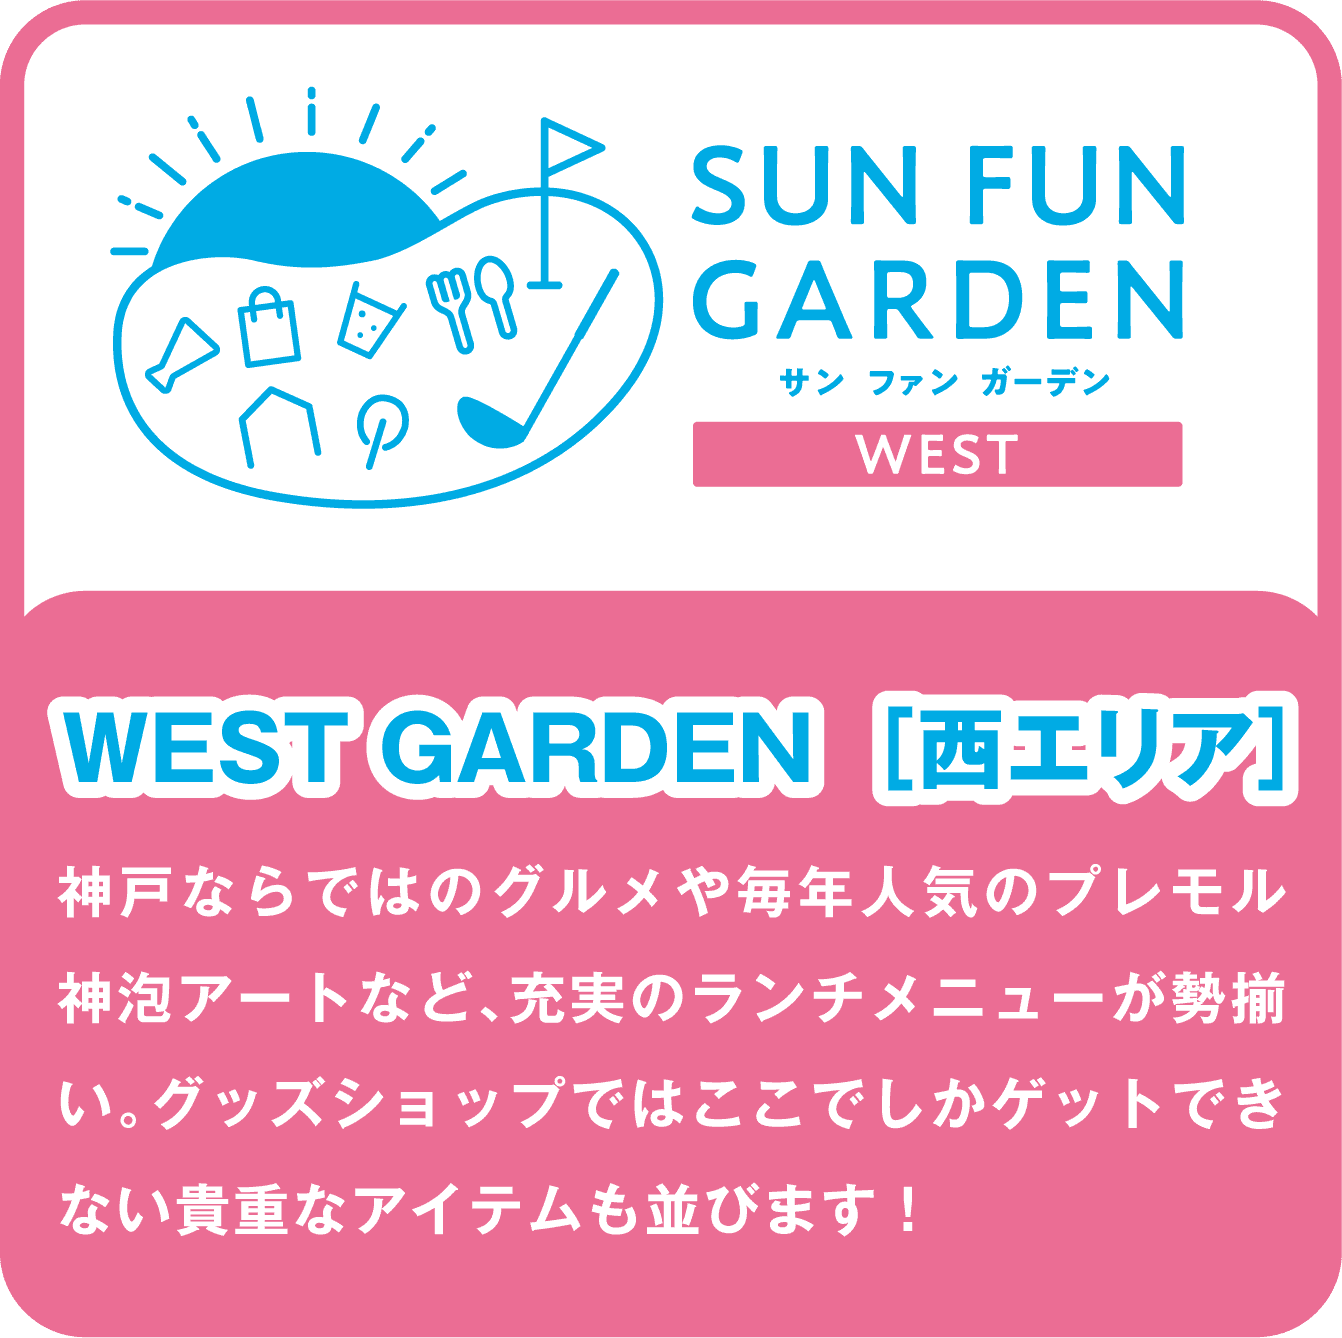 SUN FUN GARDEN サン ファン ガーデン WEST/WEST GARDEN［西エリア］/神戸ならではのグルメや毎年人気のプレモル神泡アートなど、充実のランチメニューが勢揃い。グッズショップではここでしかゲットできない貴重なアイテムも並びます！